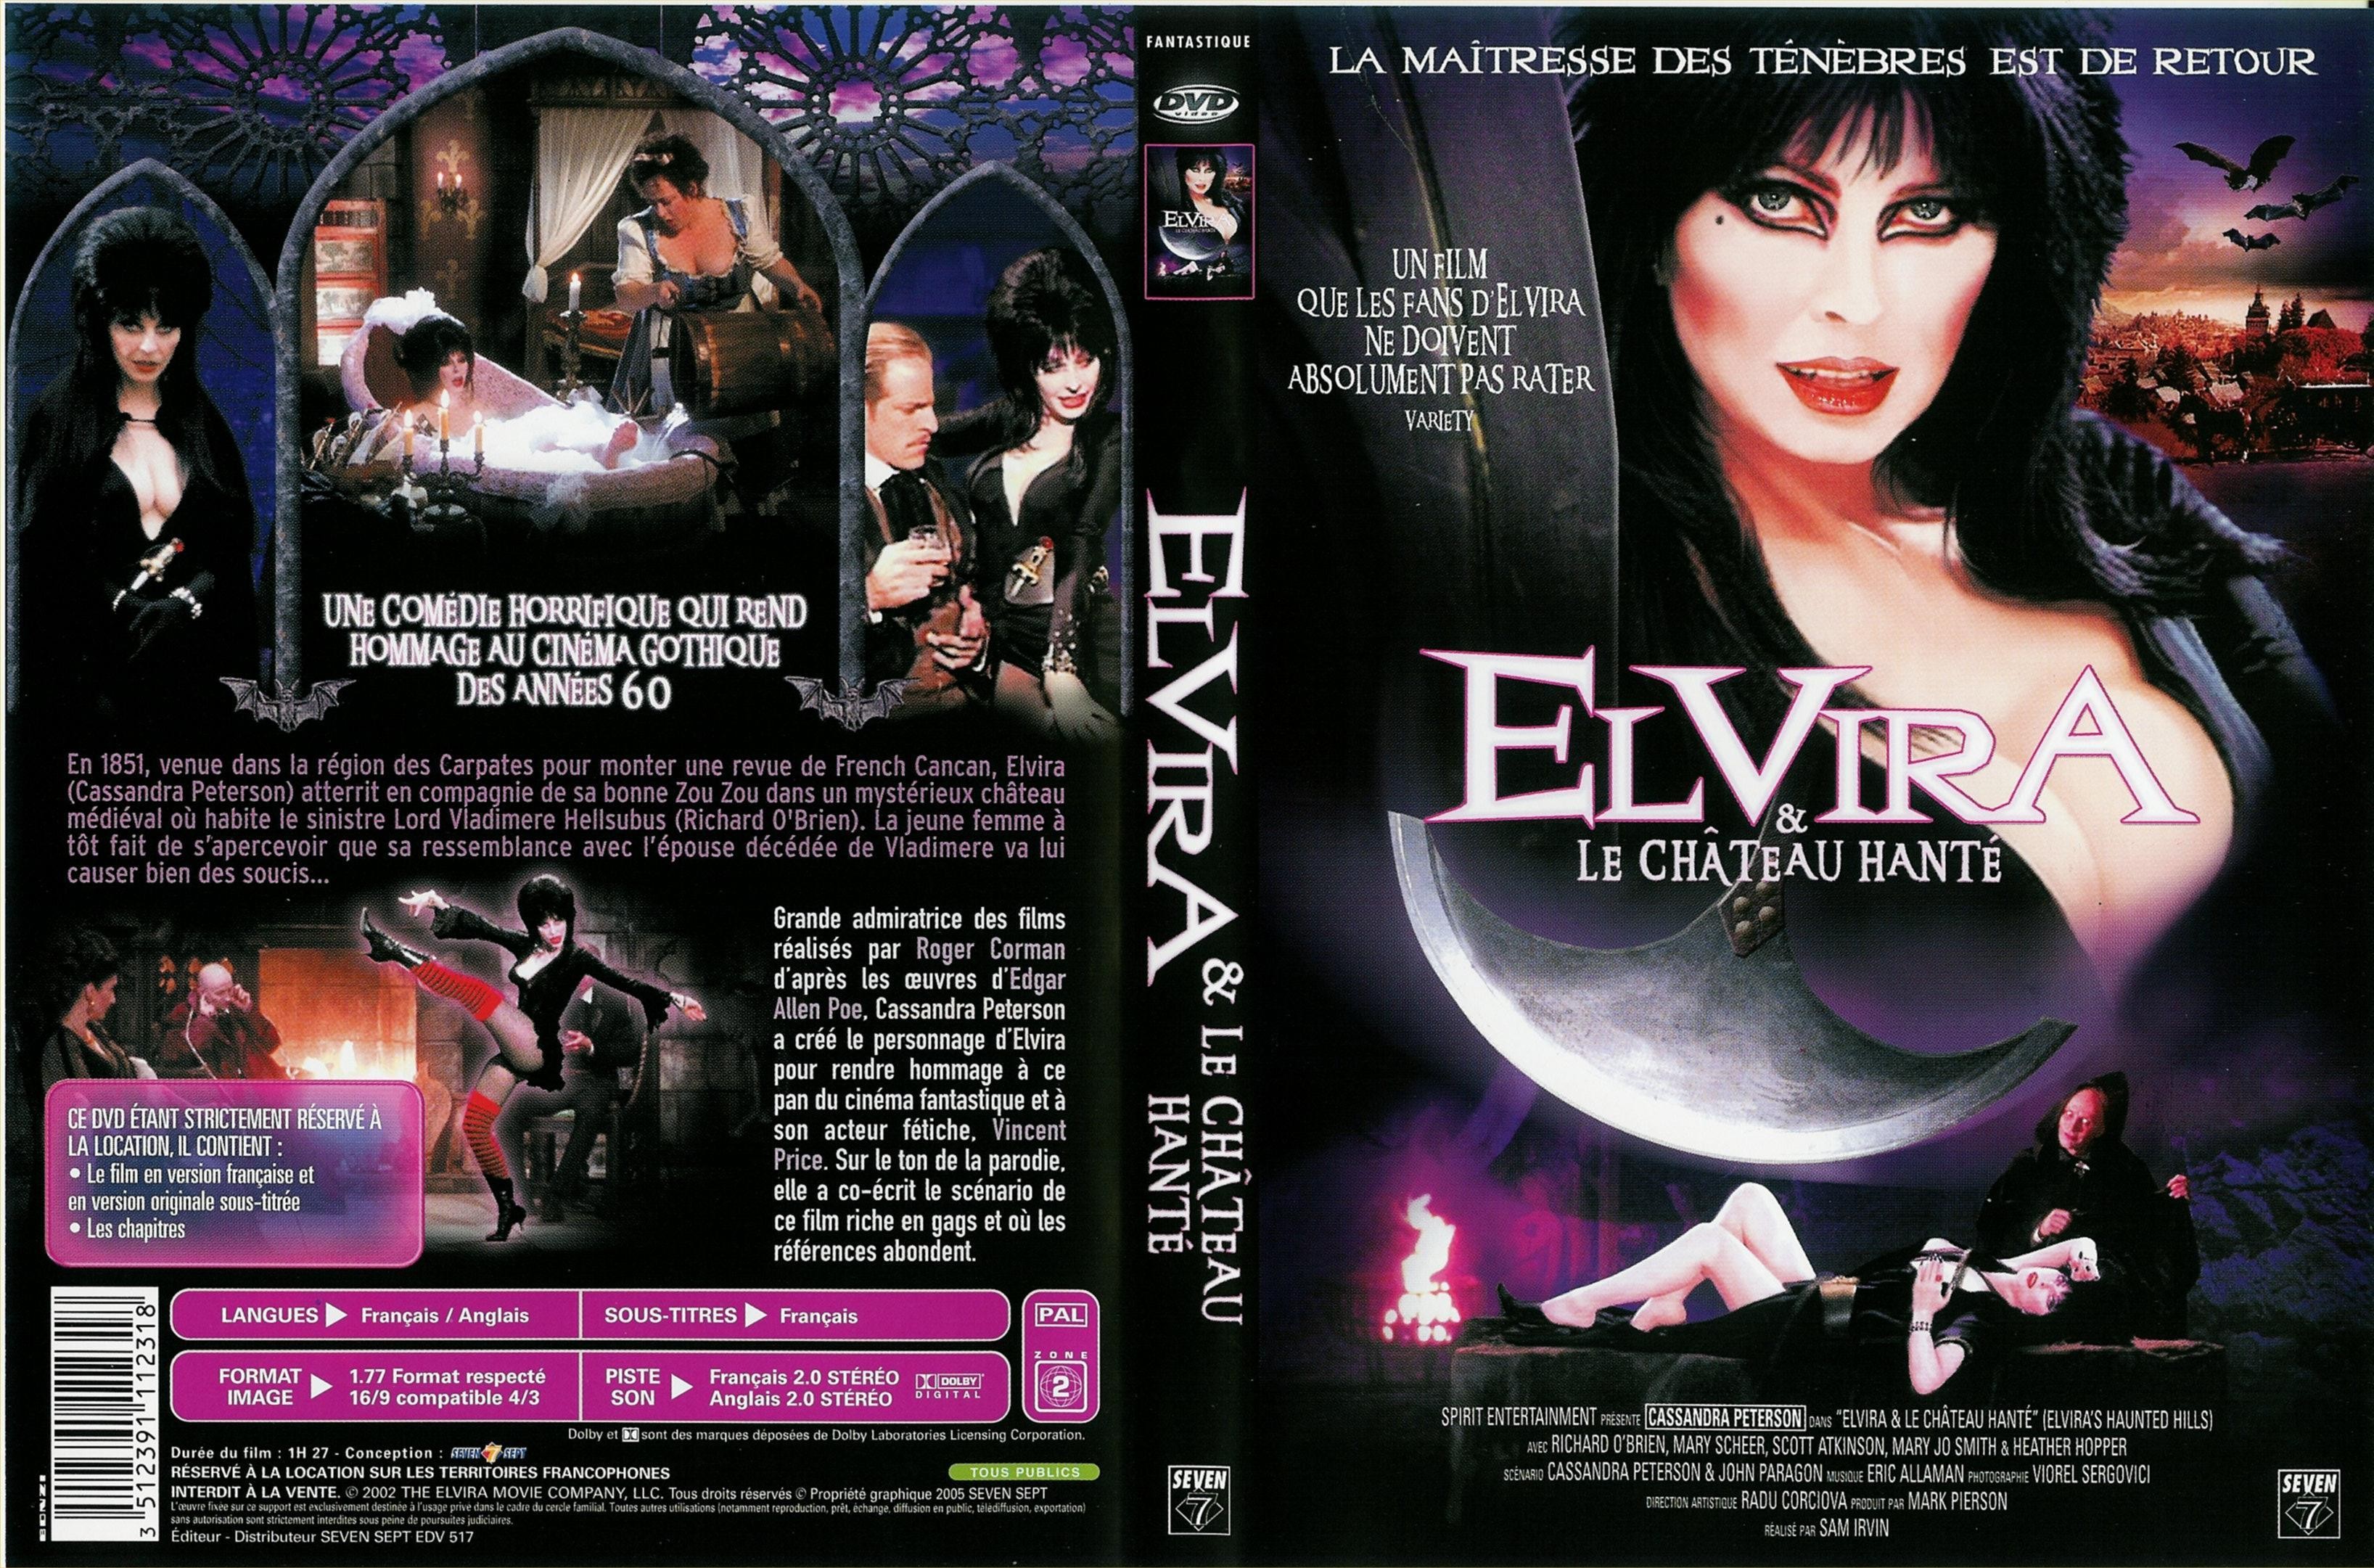 Jaquette DVD Elvira et le chateau hant v2